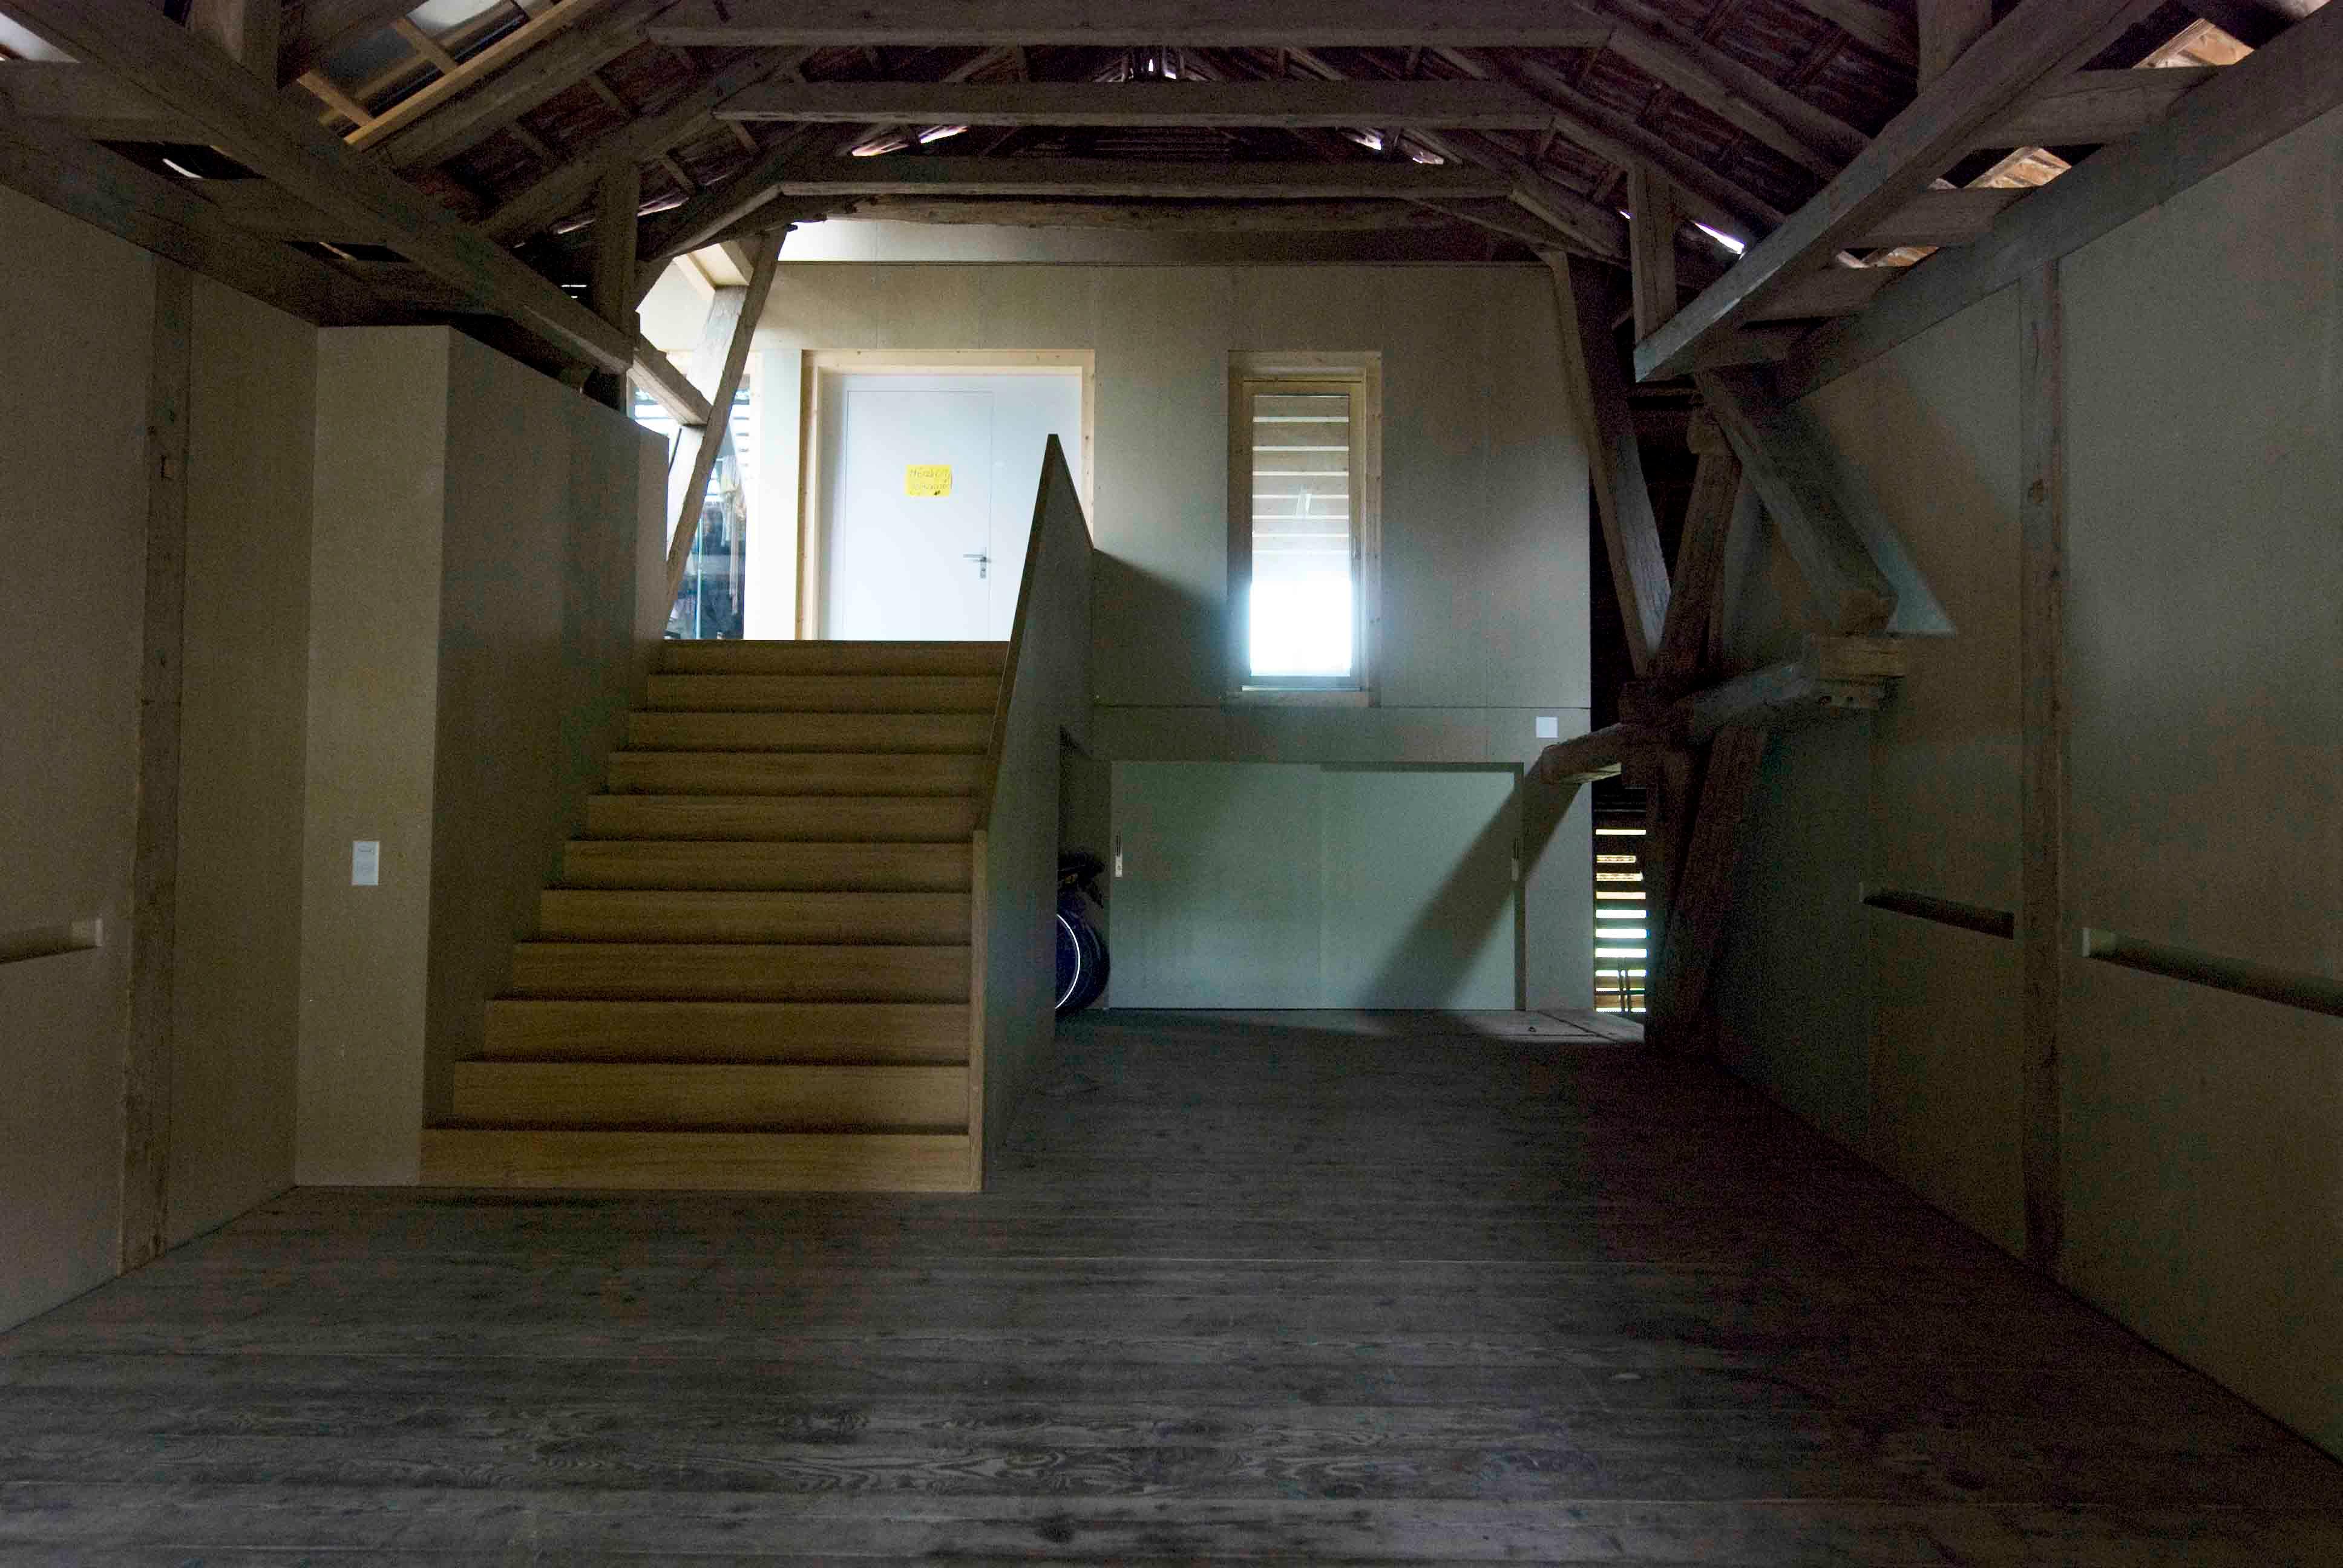  Architektur-Reportage: Wohnen im Dachstuhl: Die grosse Treppe im Inneren des Dachstuhls